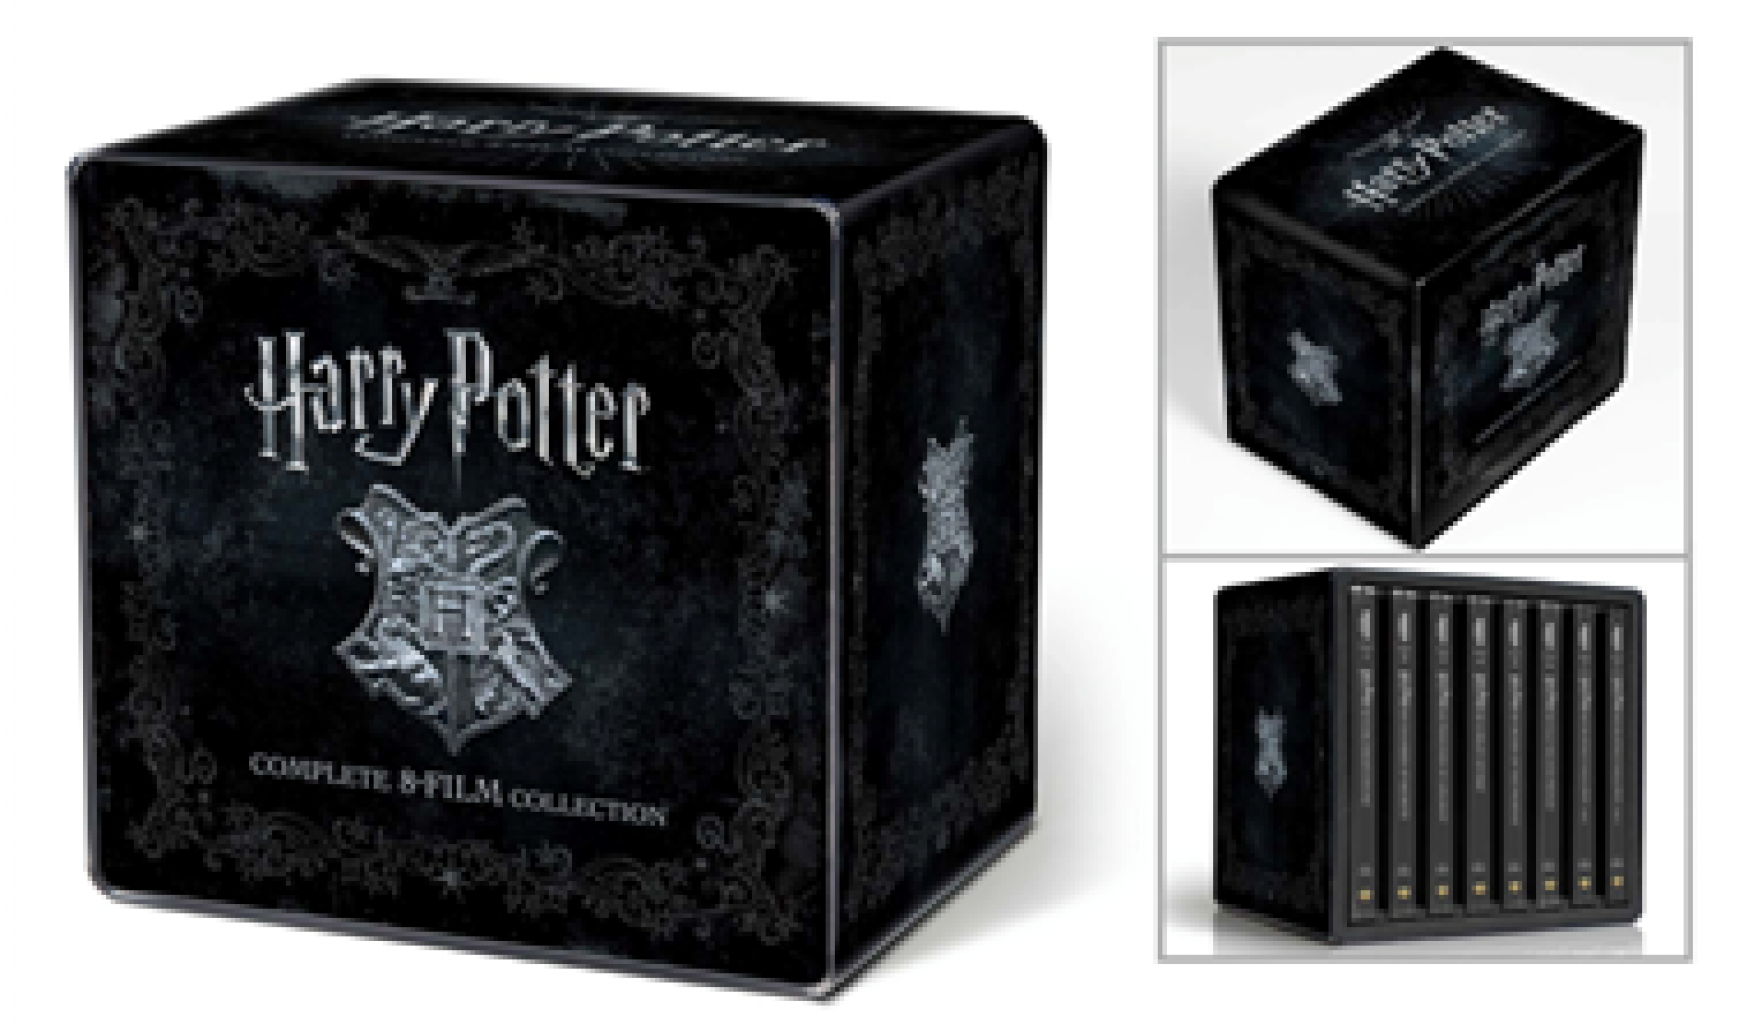 Harry Potter - a teljes gyűjtemény (16 BD) - limitált, fémdobozos változat  (steelbook)